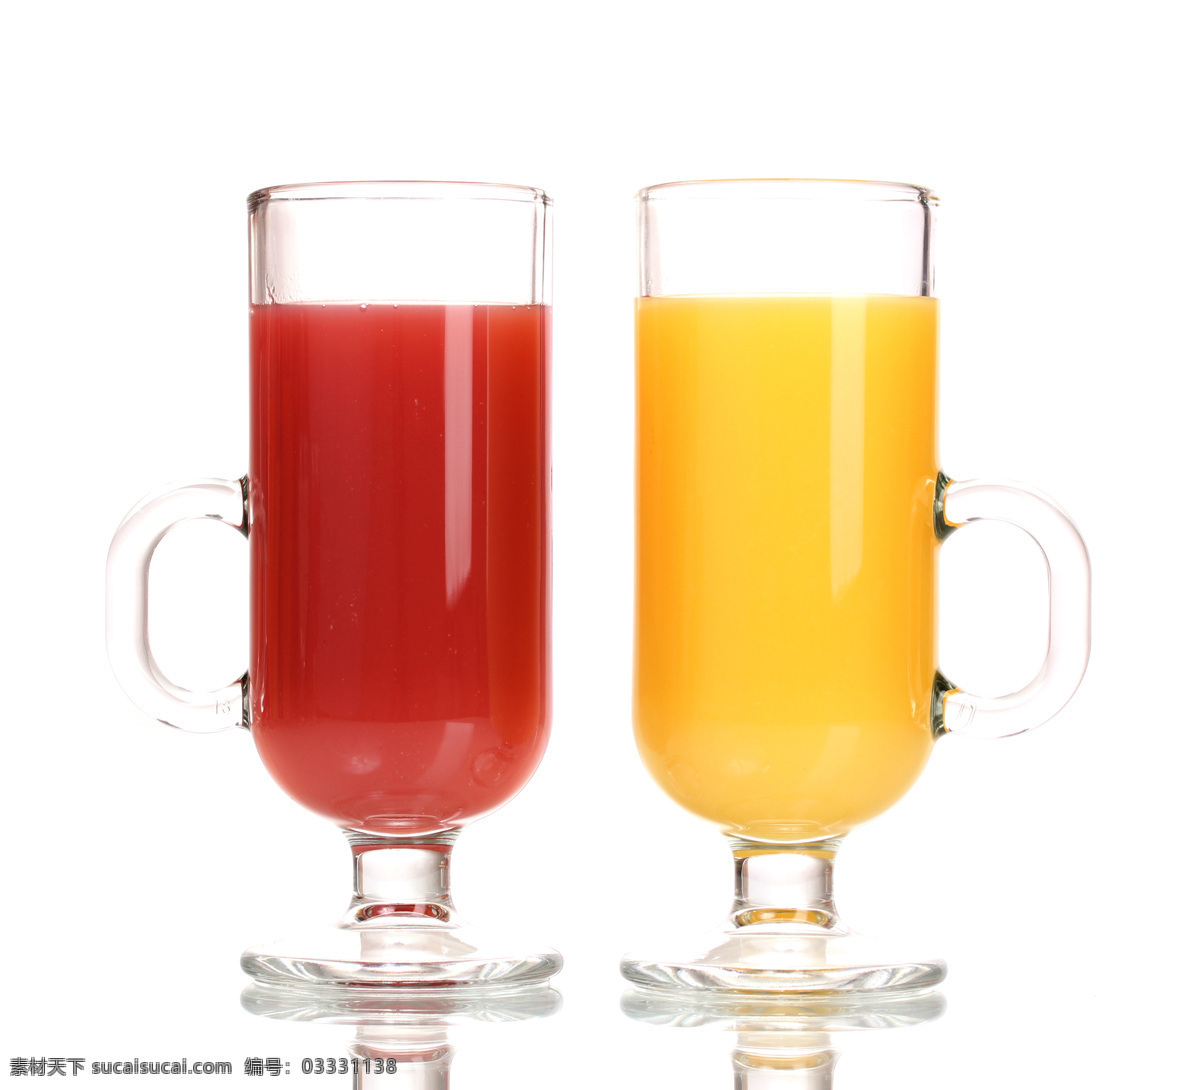 高清 水果 果汁 果汁摄影 水果果汁 杯子 饮料 酒类图片 餐饮美食